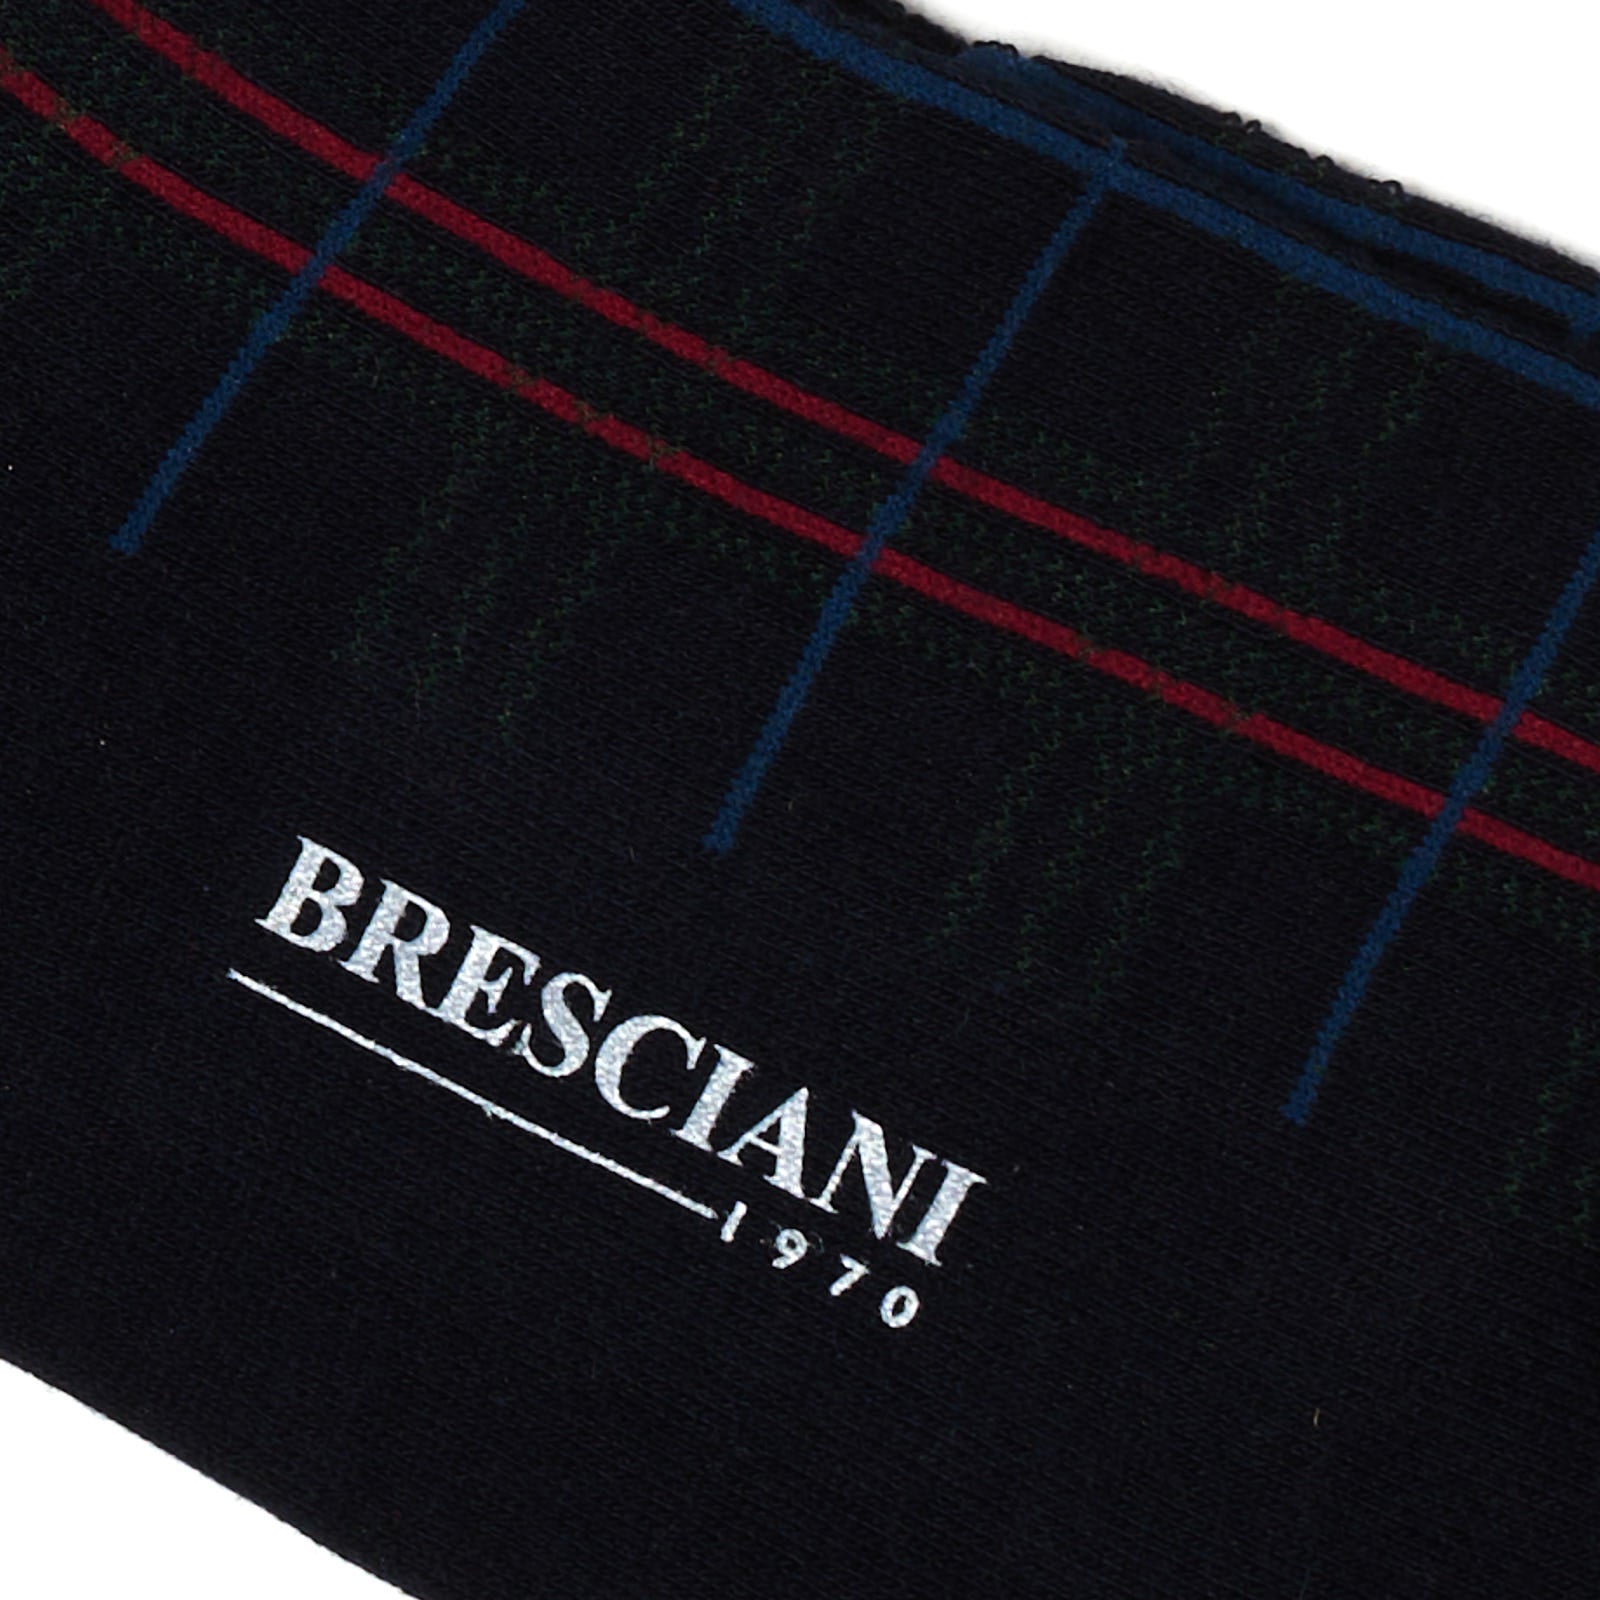 BRESCIANI Cotton Small Pattern Design Mid Calf Length Socks US M-L BRESCIANI